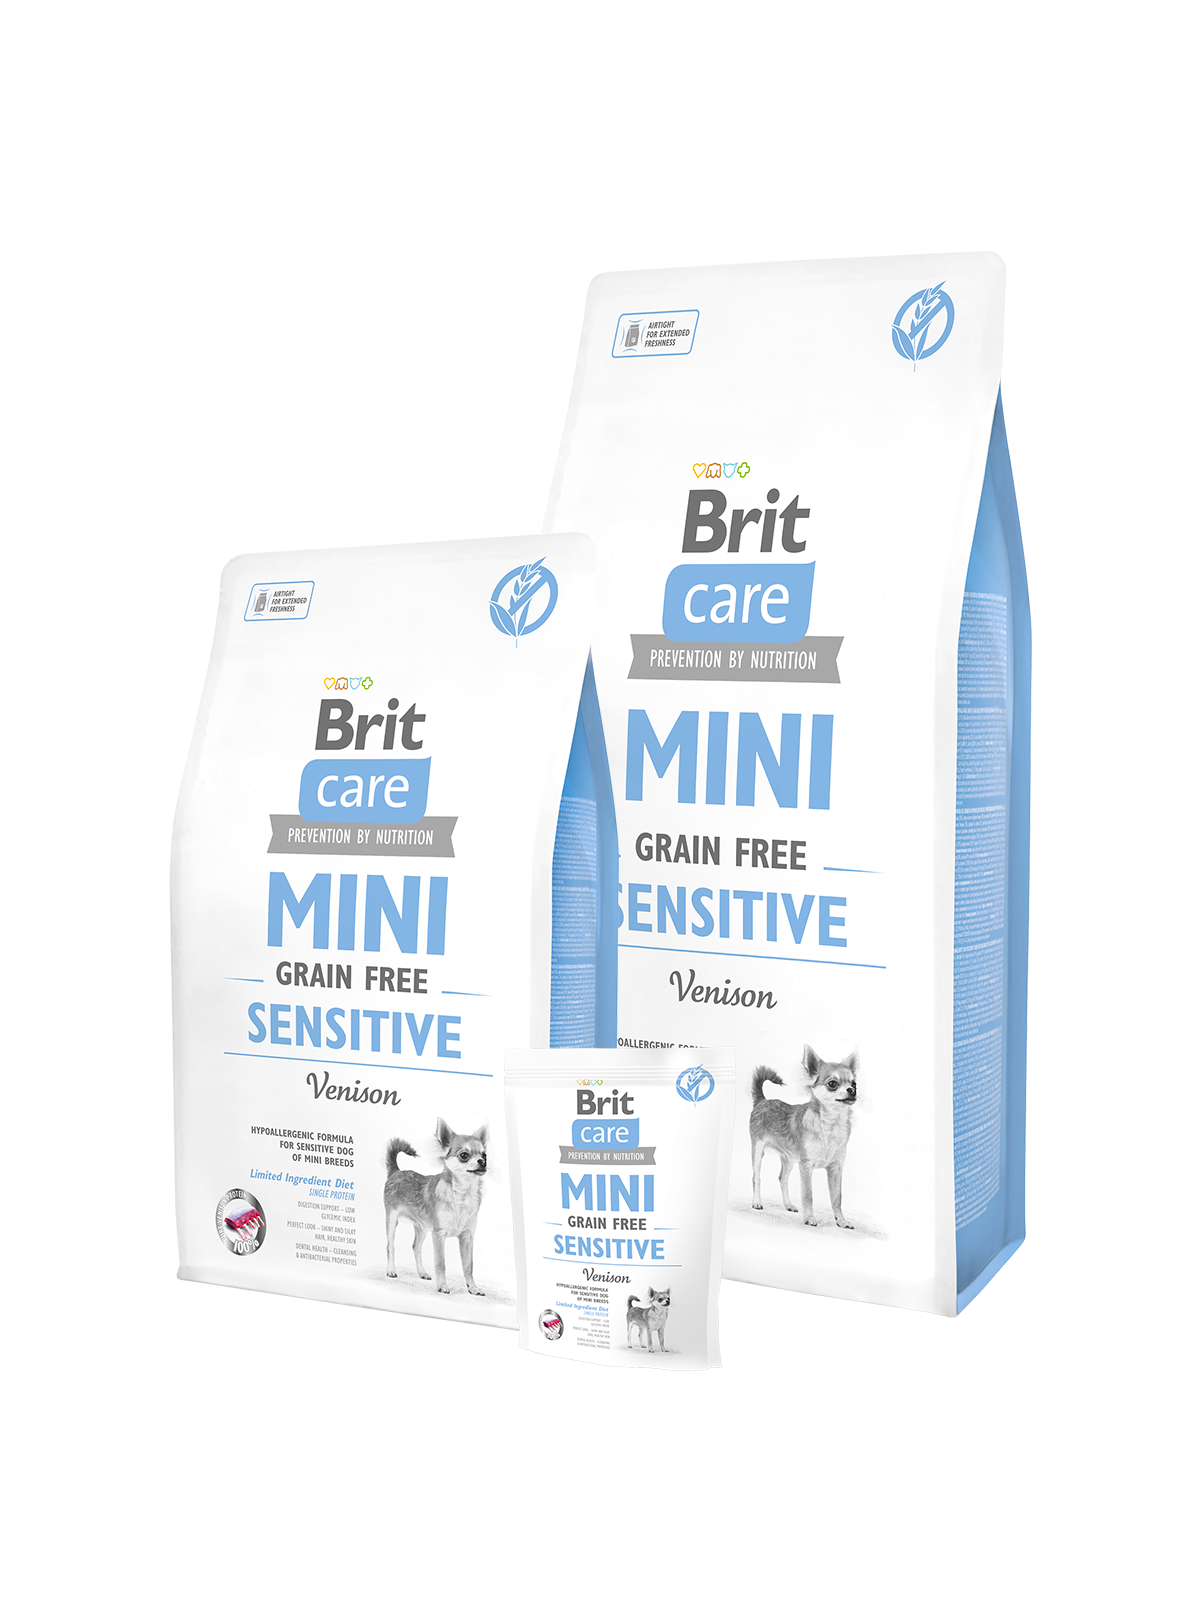 Brit Care Mini Sensitive Grain Free - Hjort, spannmålsfritt för känsliga vuxna hundar av små raser